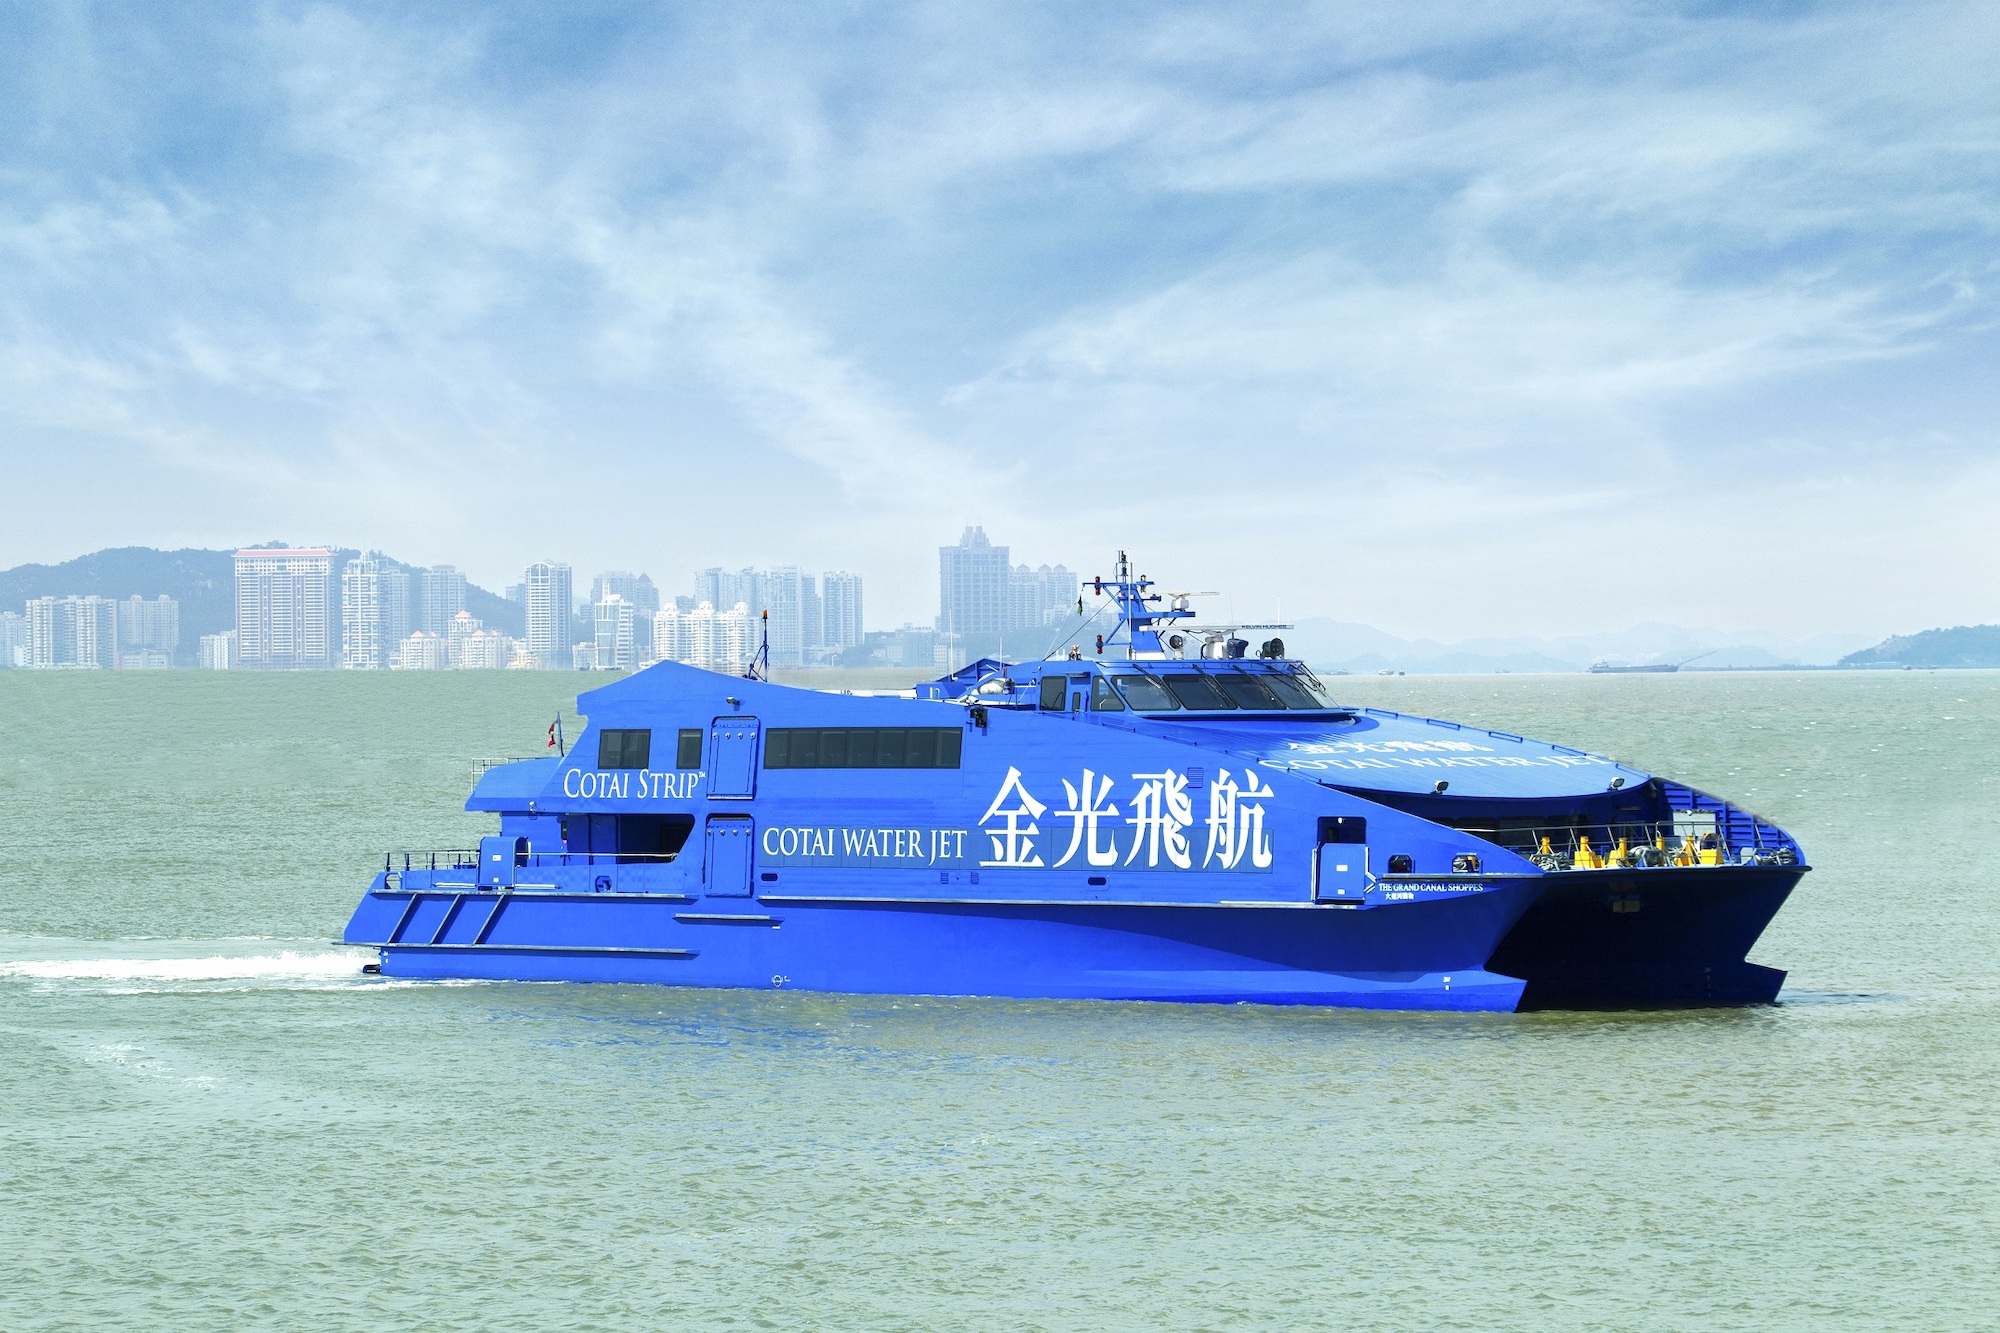 Macao-Hong Kong ferries start running on Sunday